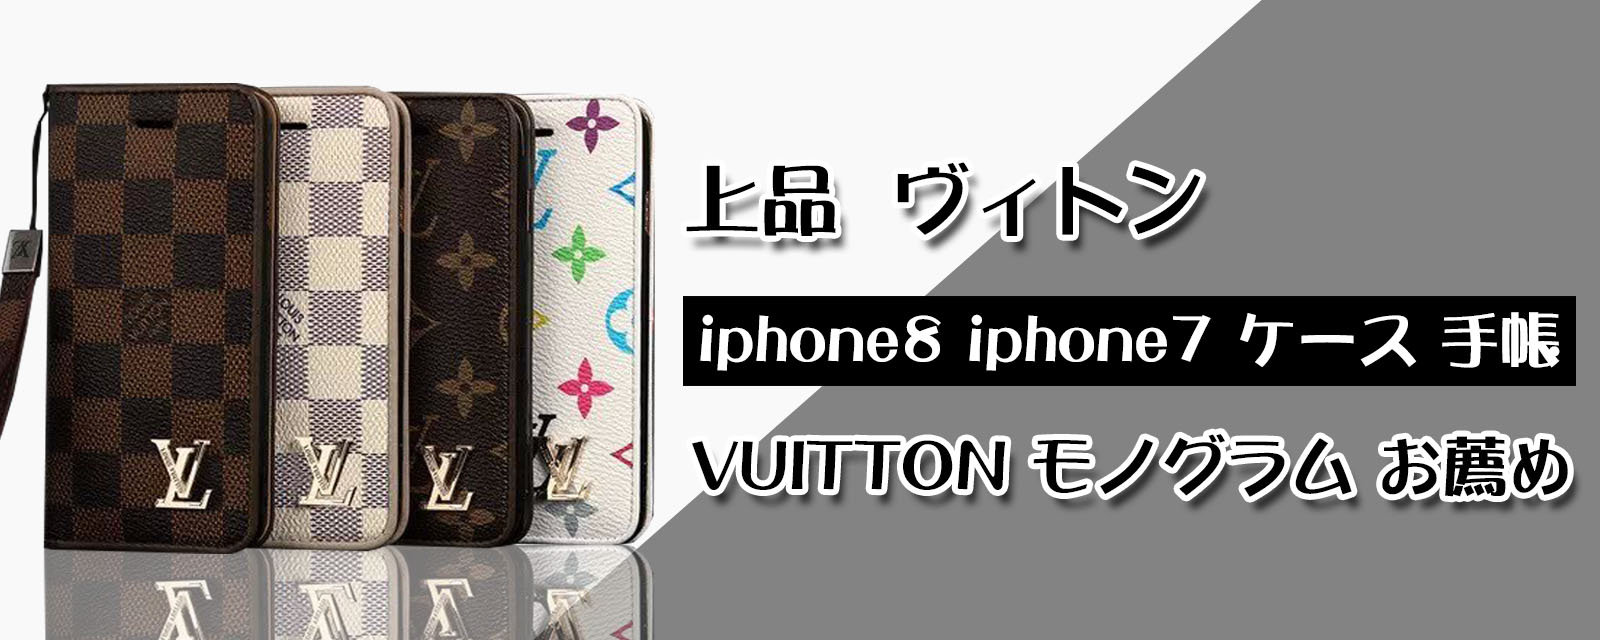 上品 ヴィトン iphone8 iphone7 ケース 手帳 VUITTON モノグラム お薦め